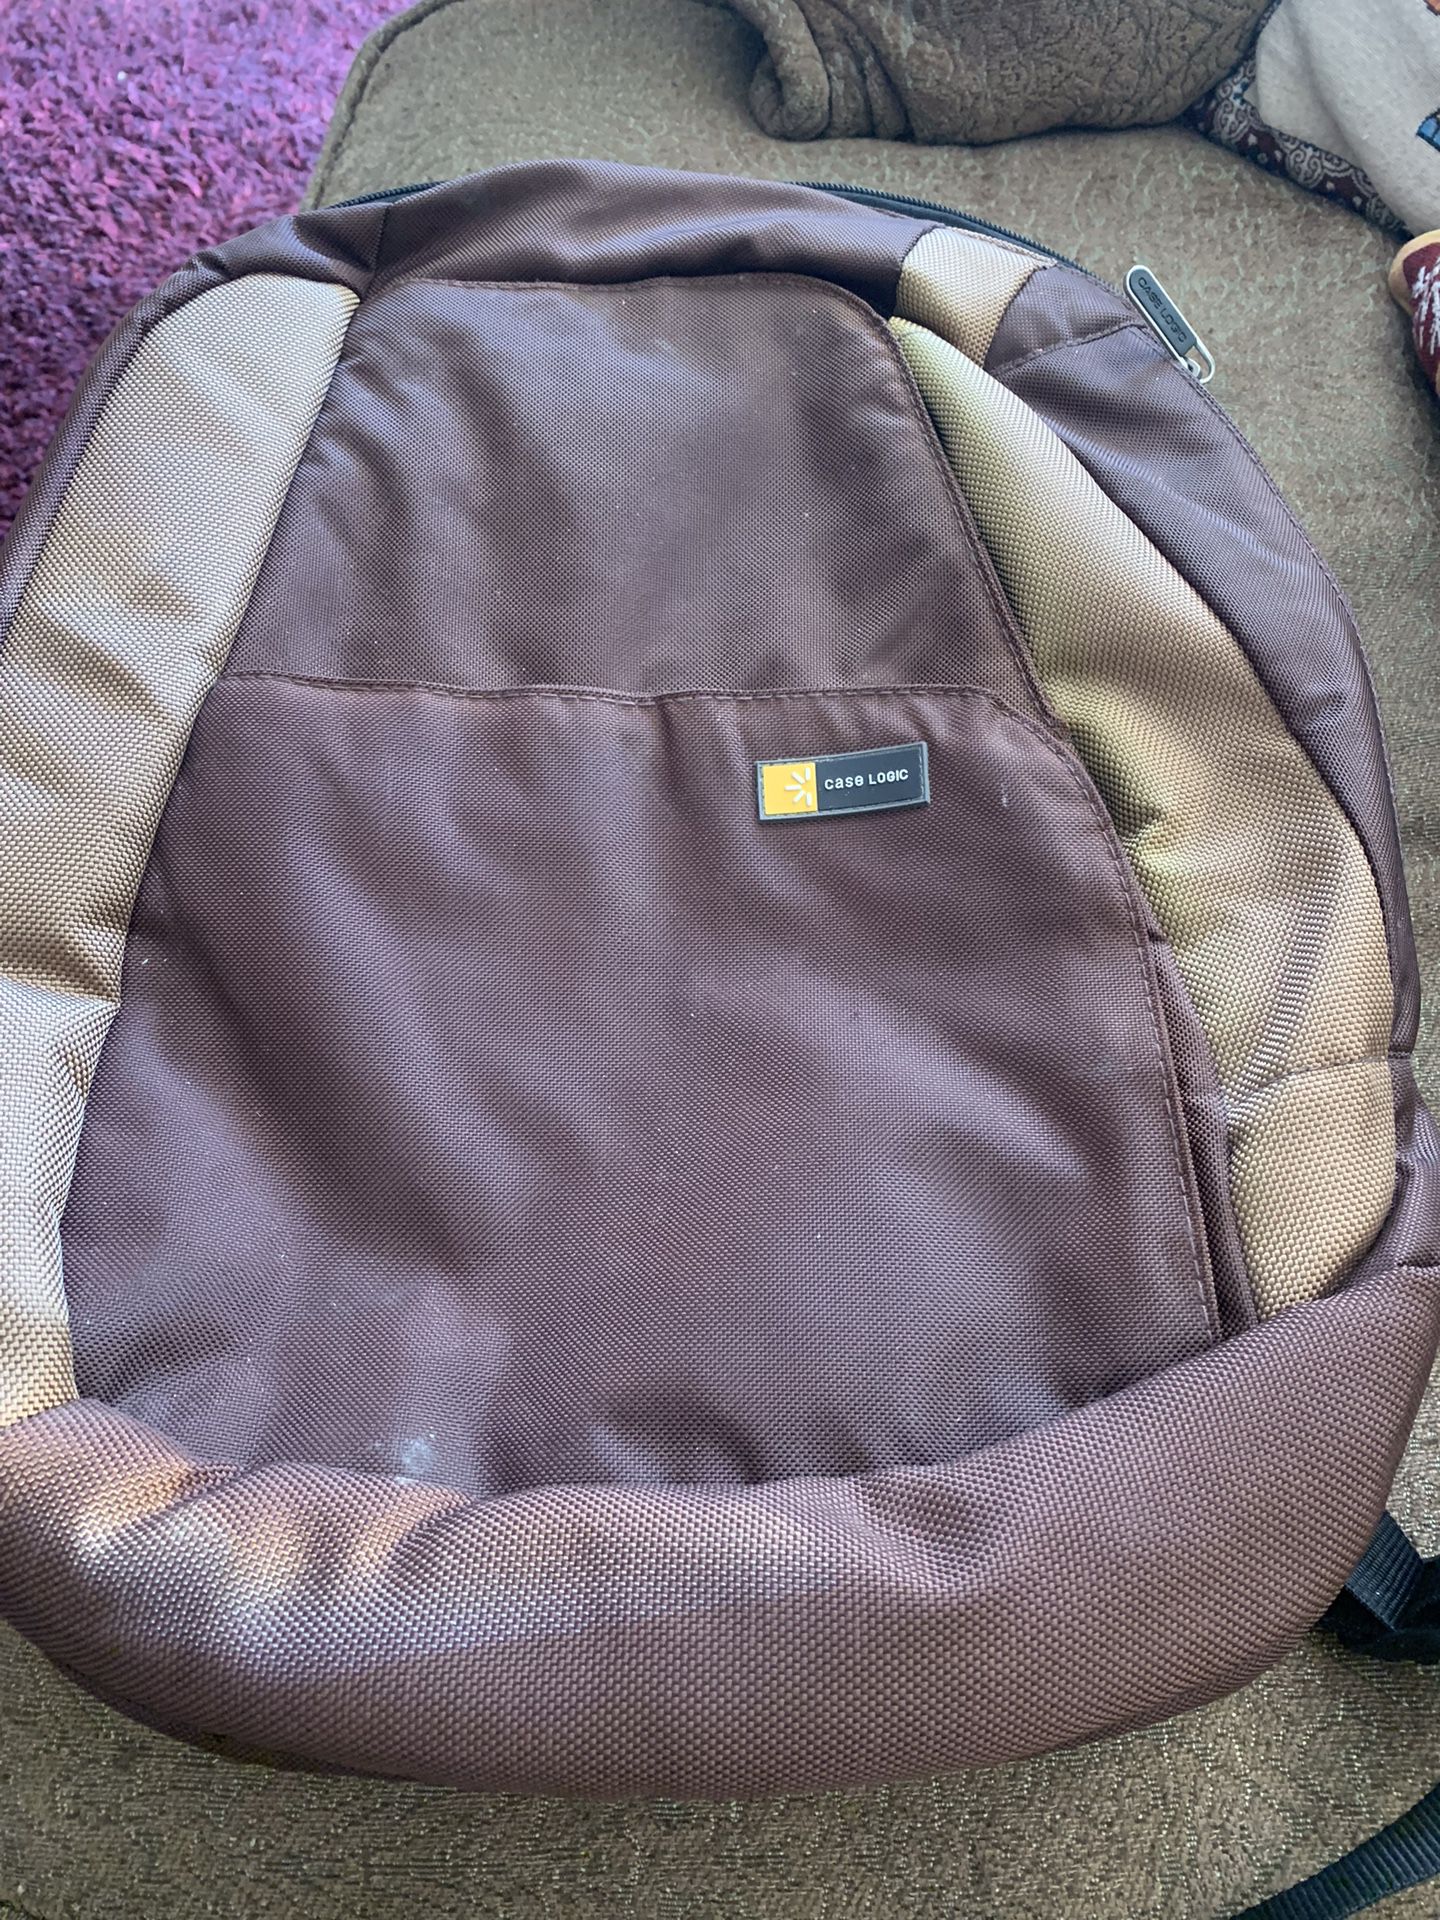 Case Logic Laptop Backpack Reduced!